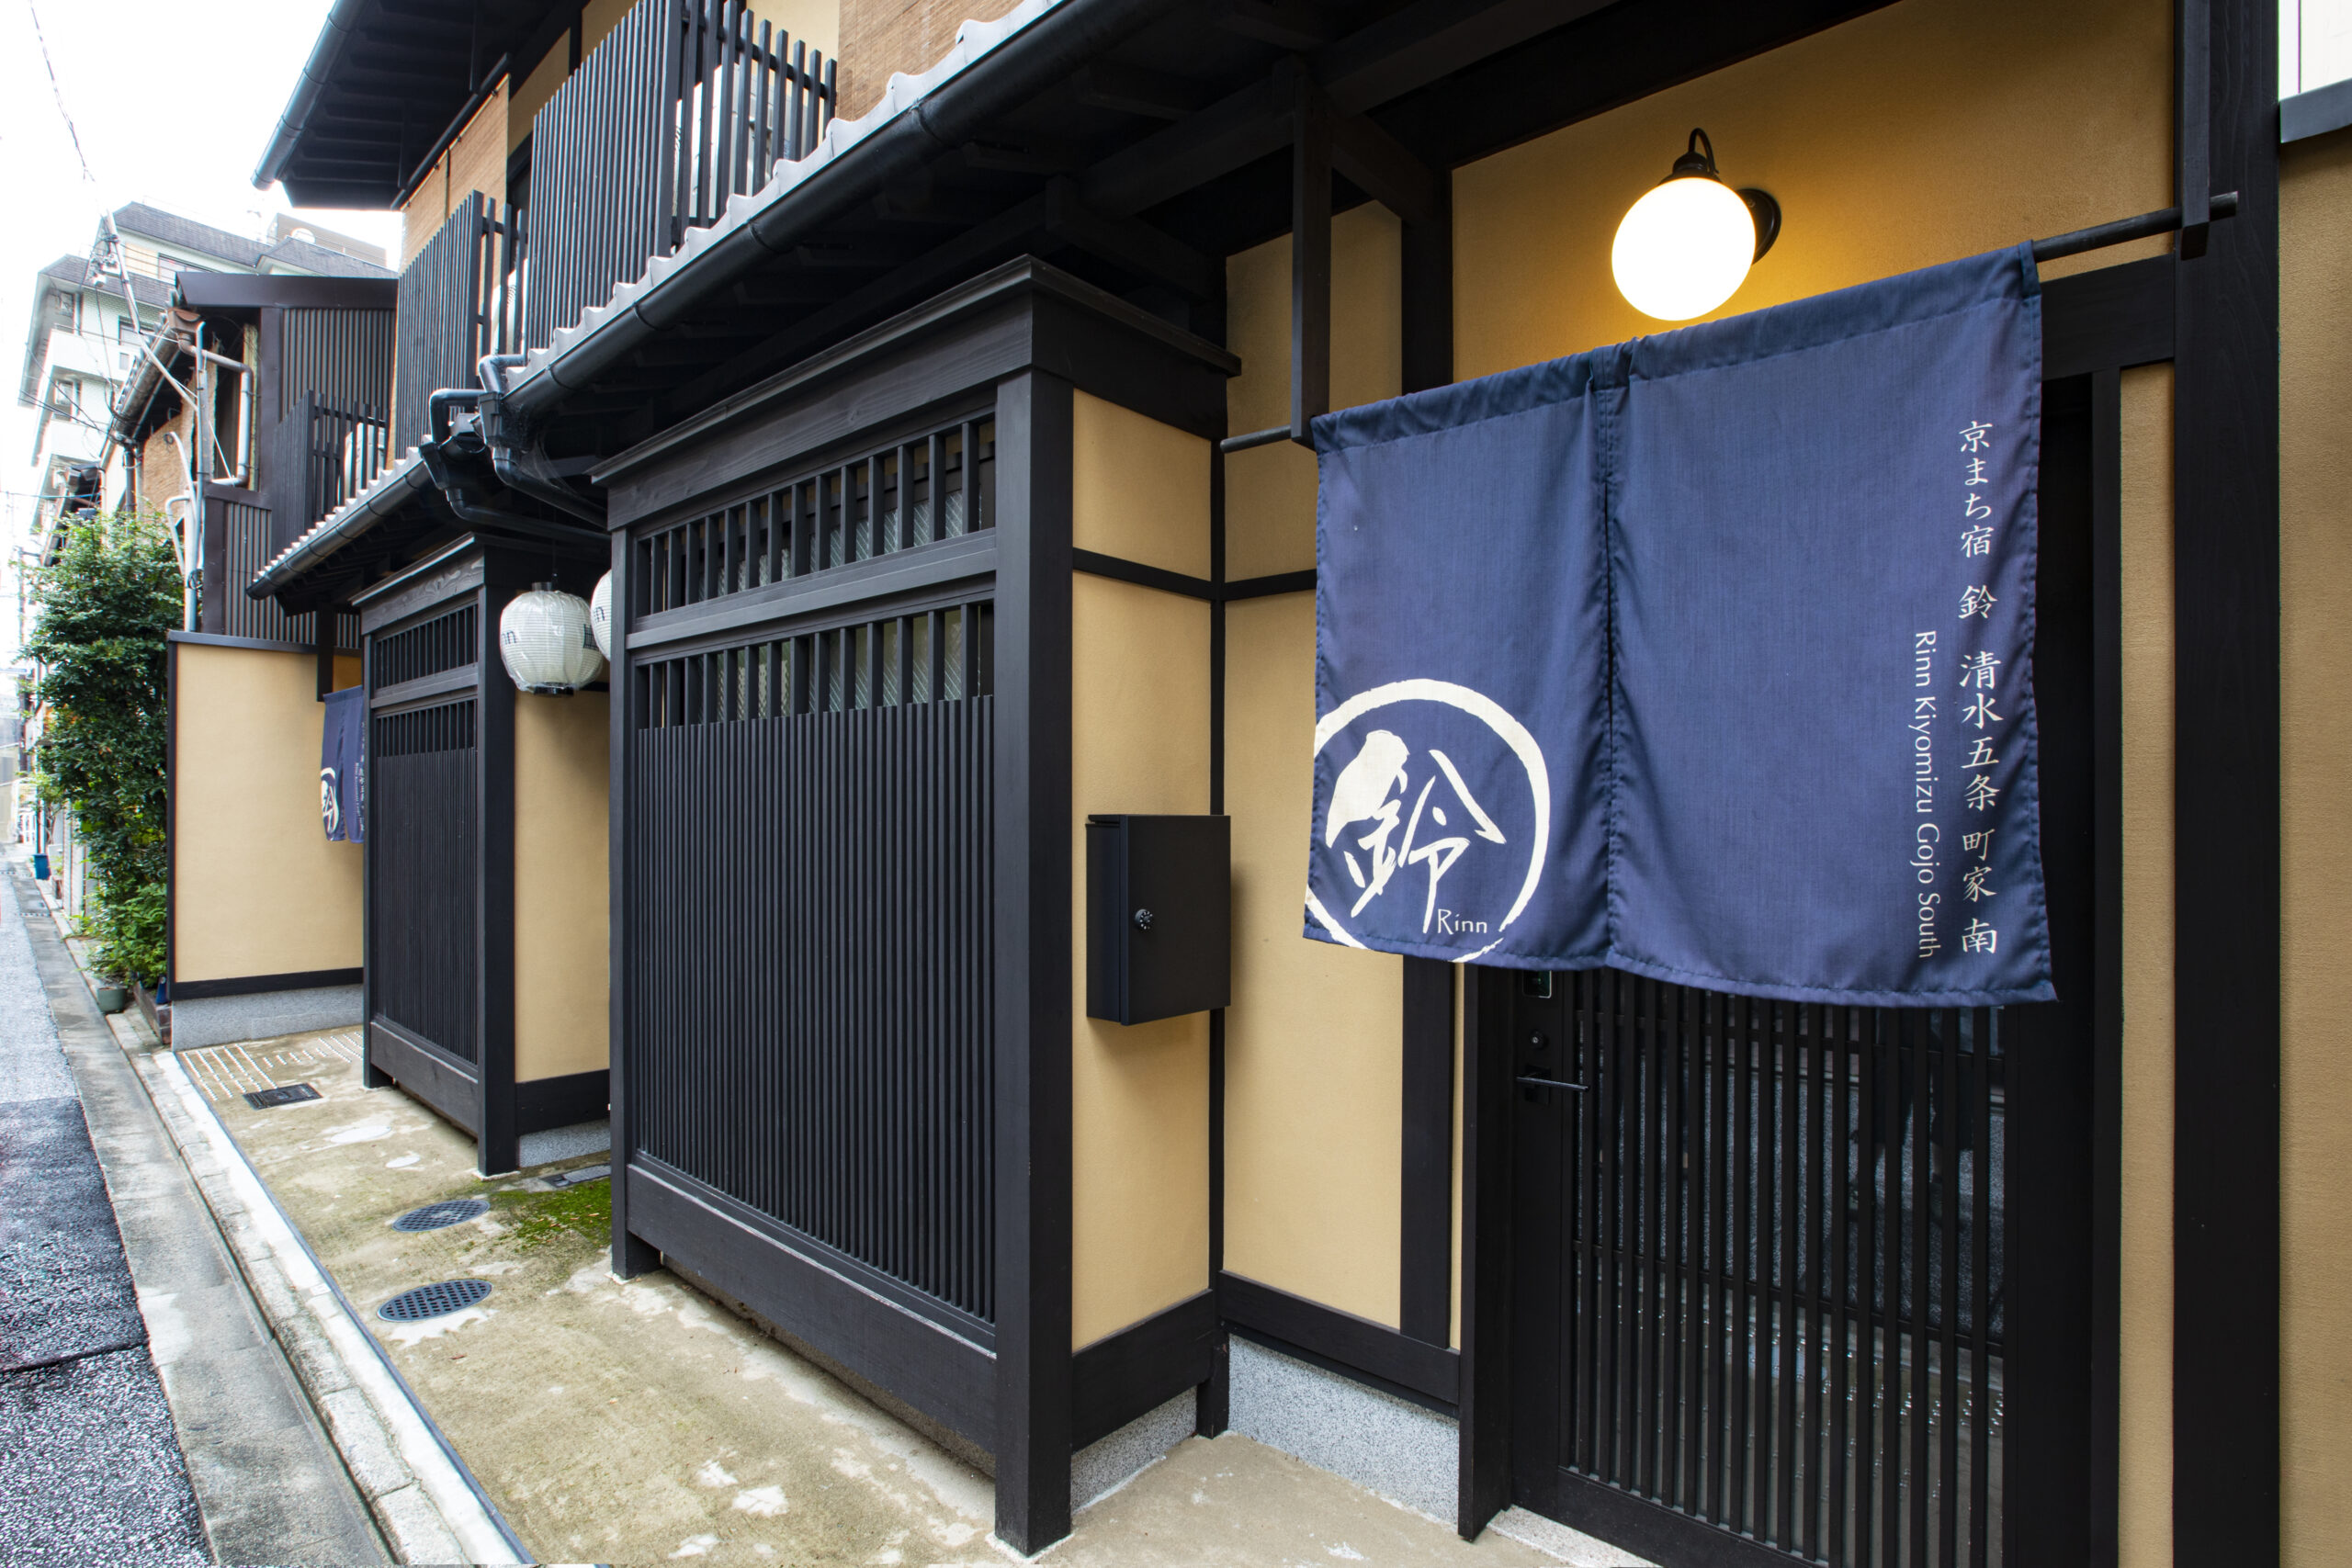 「Rinn Kiyomizu Gojo Machiya South」のサムネイル画像